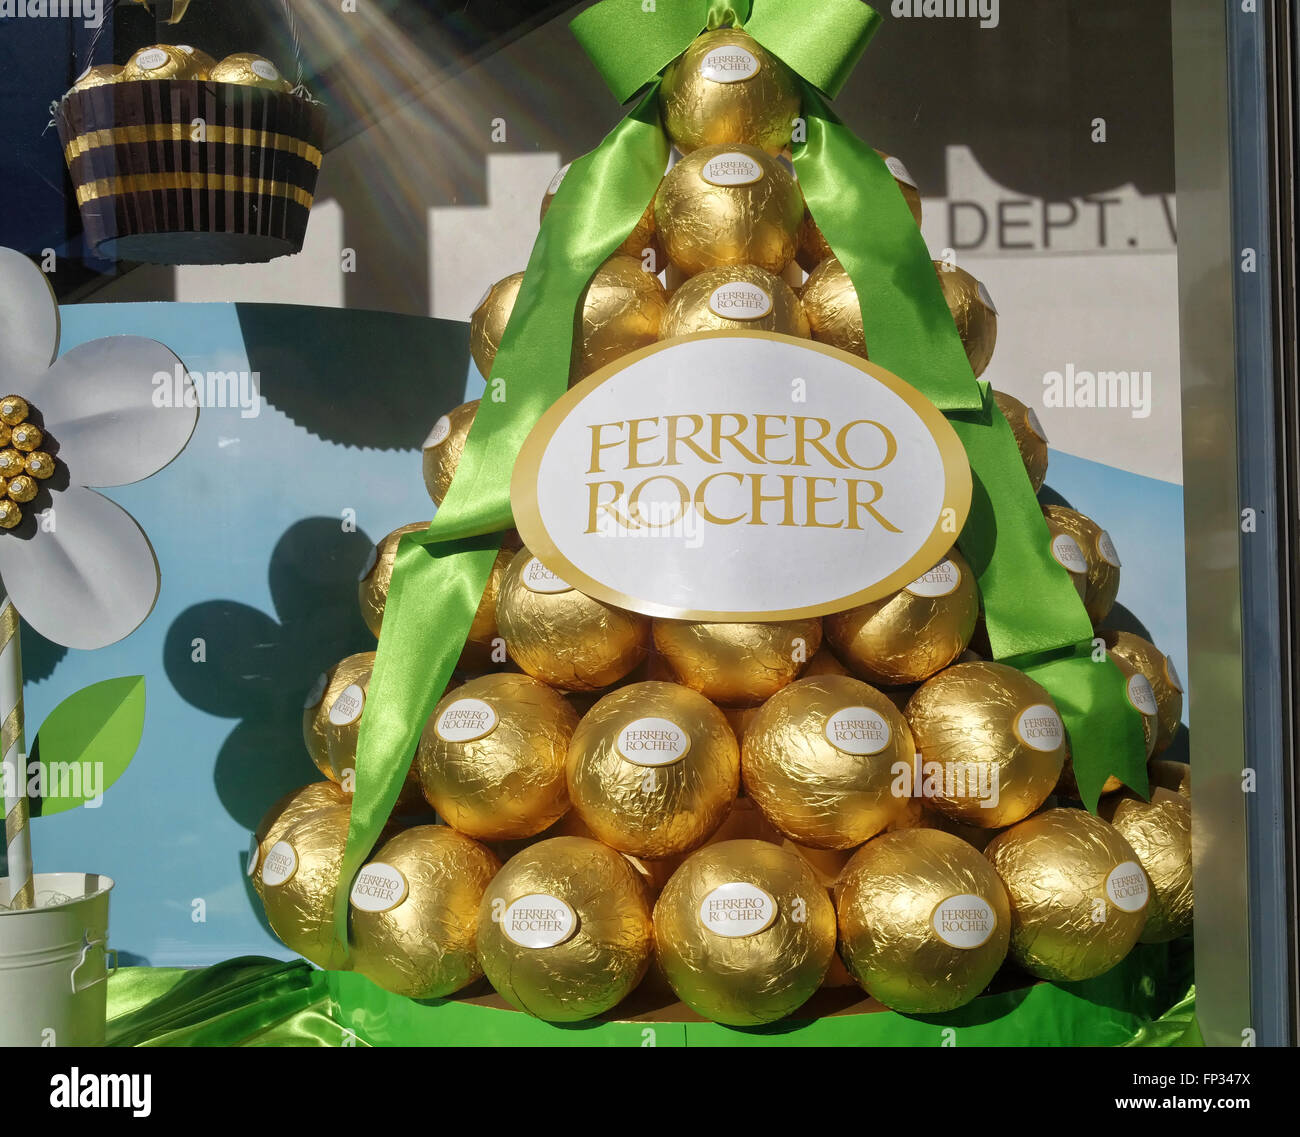 Ferrero Rocher Pasqua display gigante con golden tartufi di cioccolato o bon bons. Foto Stock